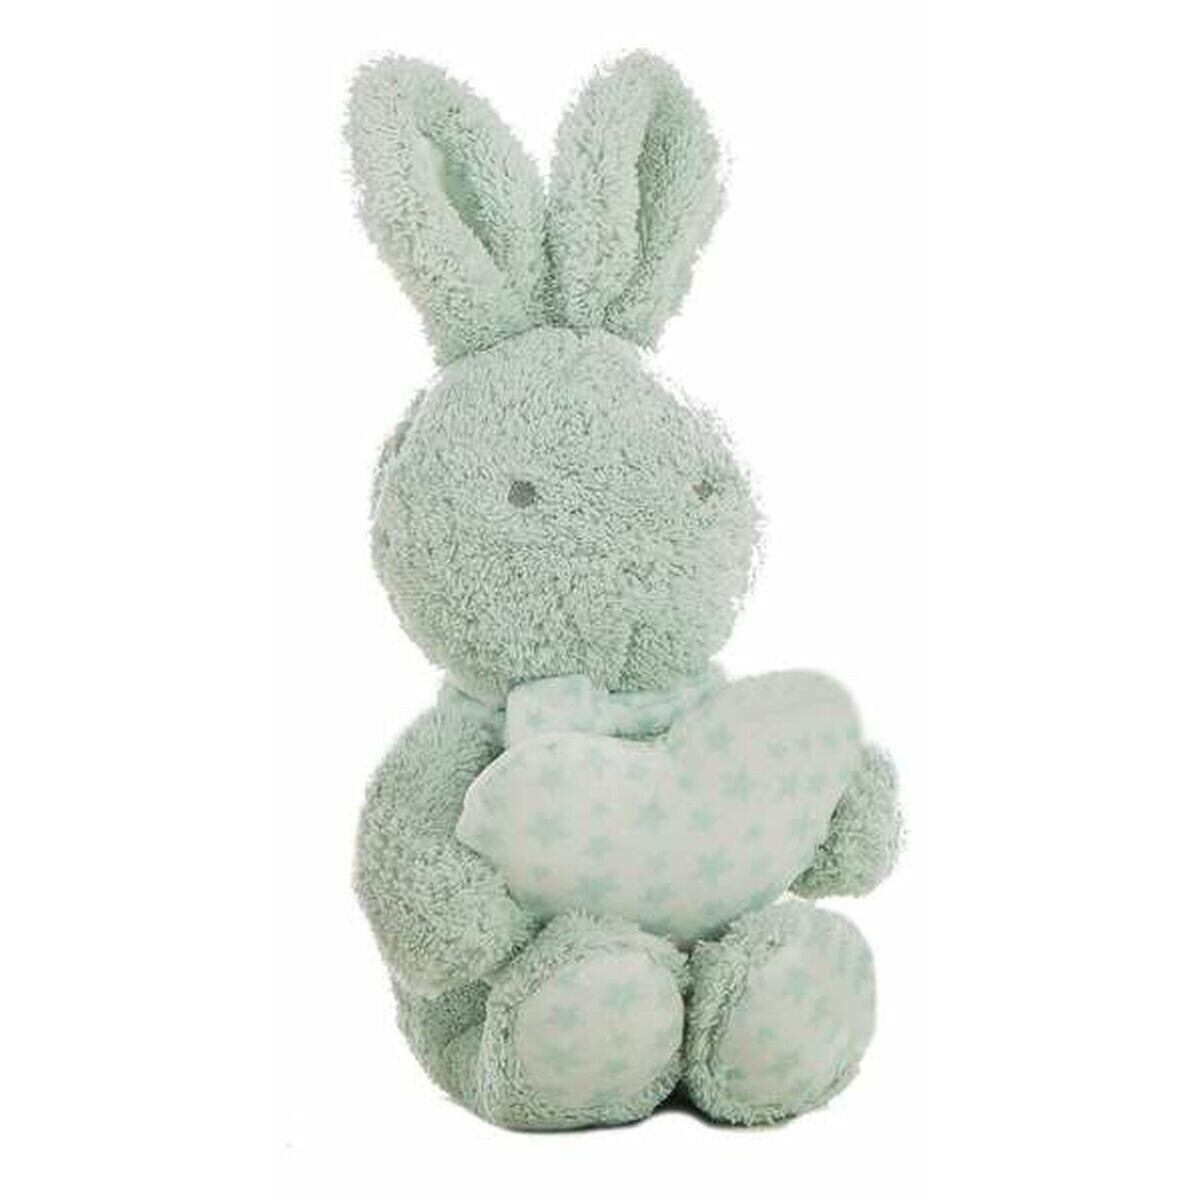 Fluffy toy Estrelli Rabbit